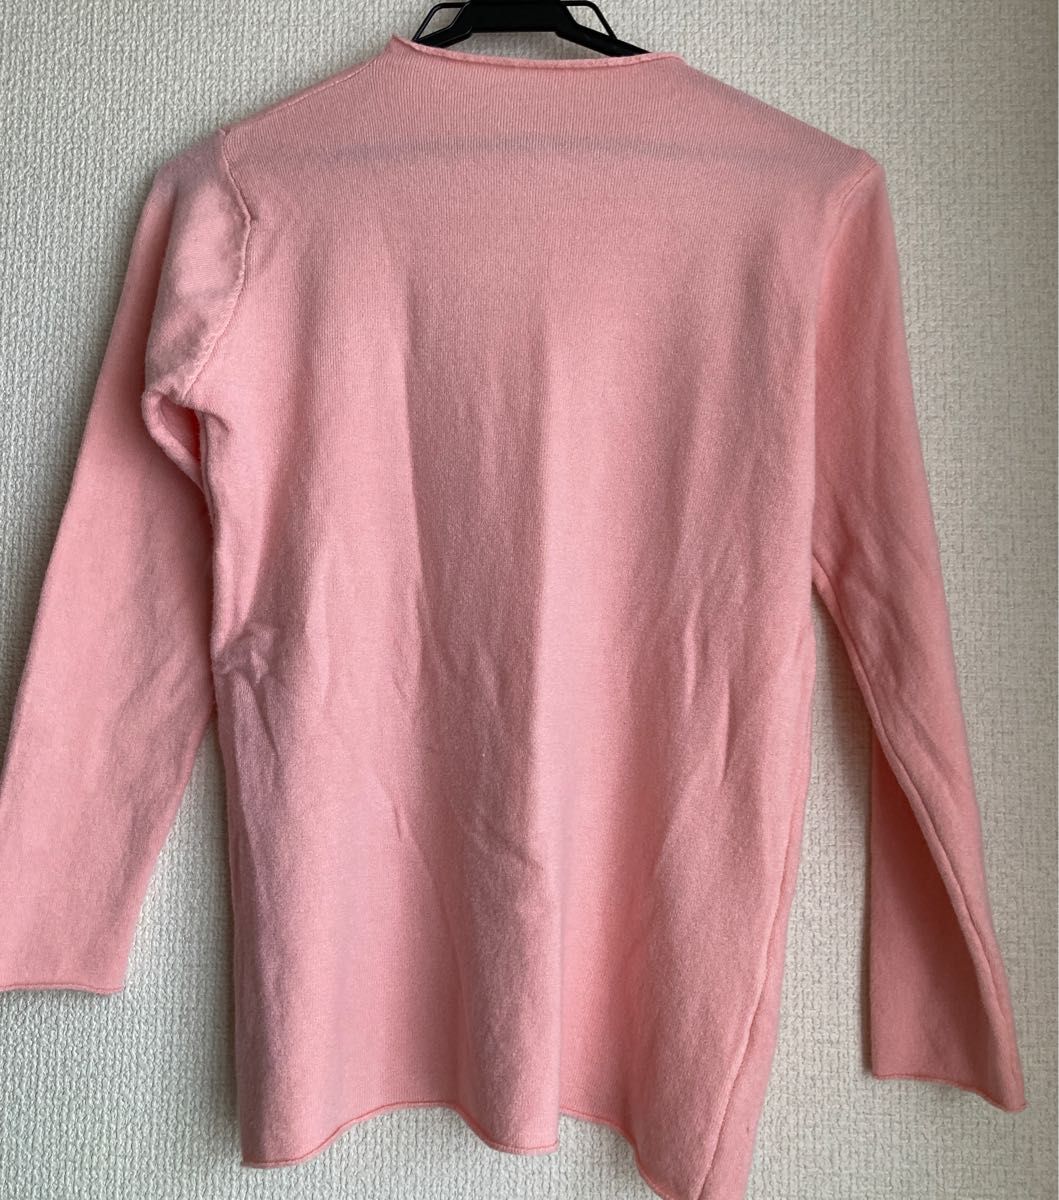 未使用 サーモンピンク ベビーピンク ニットプルオーバー クルーネック Mサイズ 細身シルエット 韓国ファッション